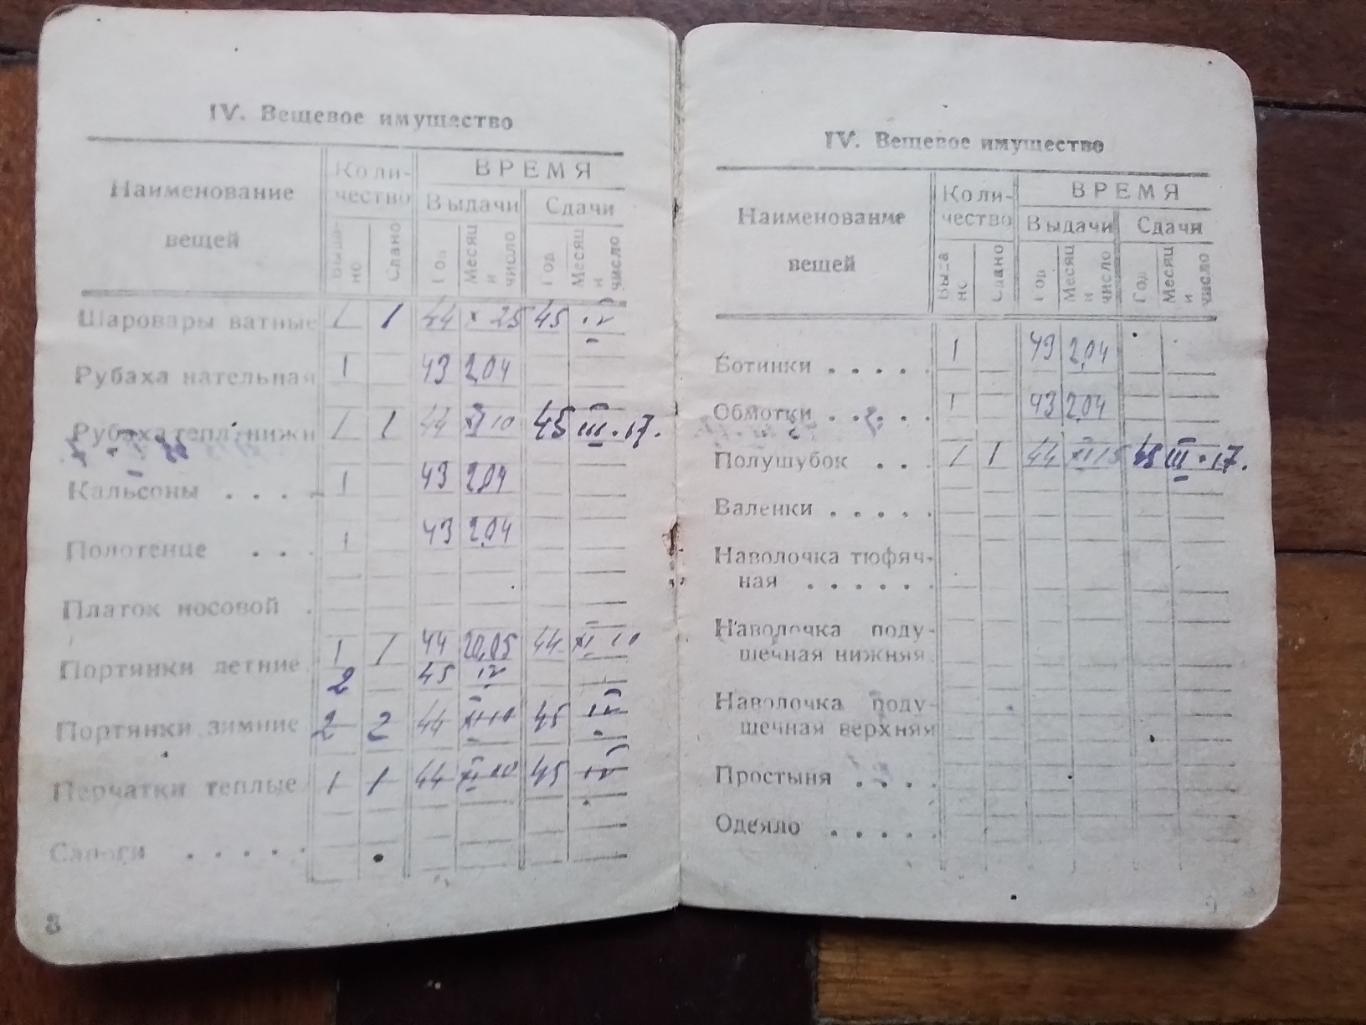 Военный билет 1943 Телеграфист Кавалер Красной Звезды и Ордена Славы 3 ст. Пенза 4